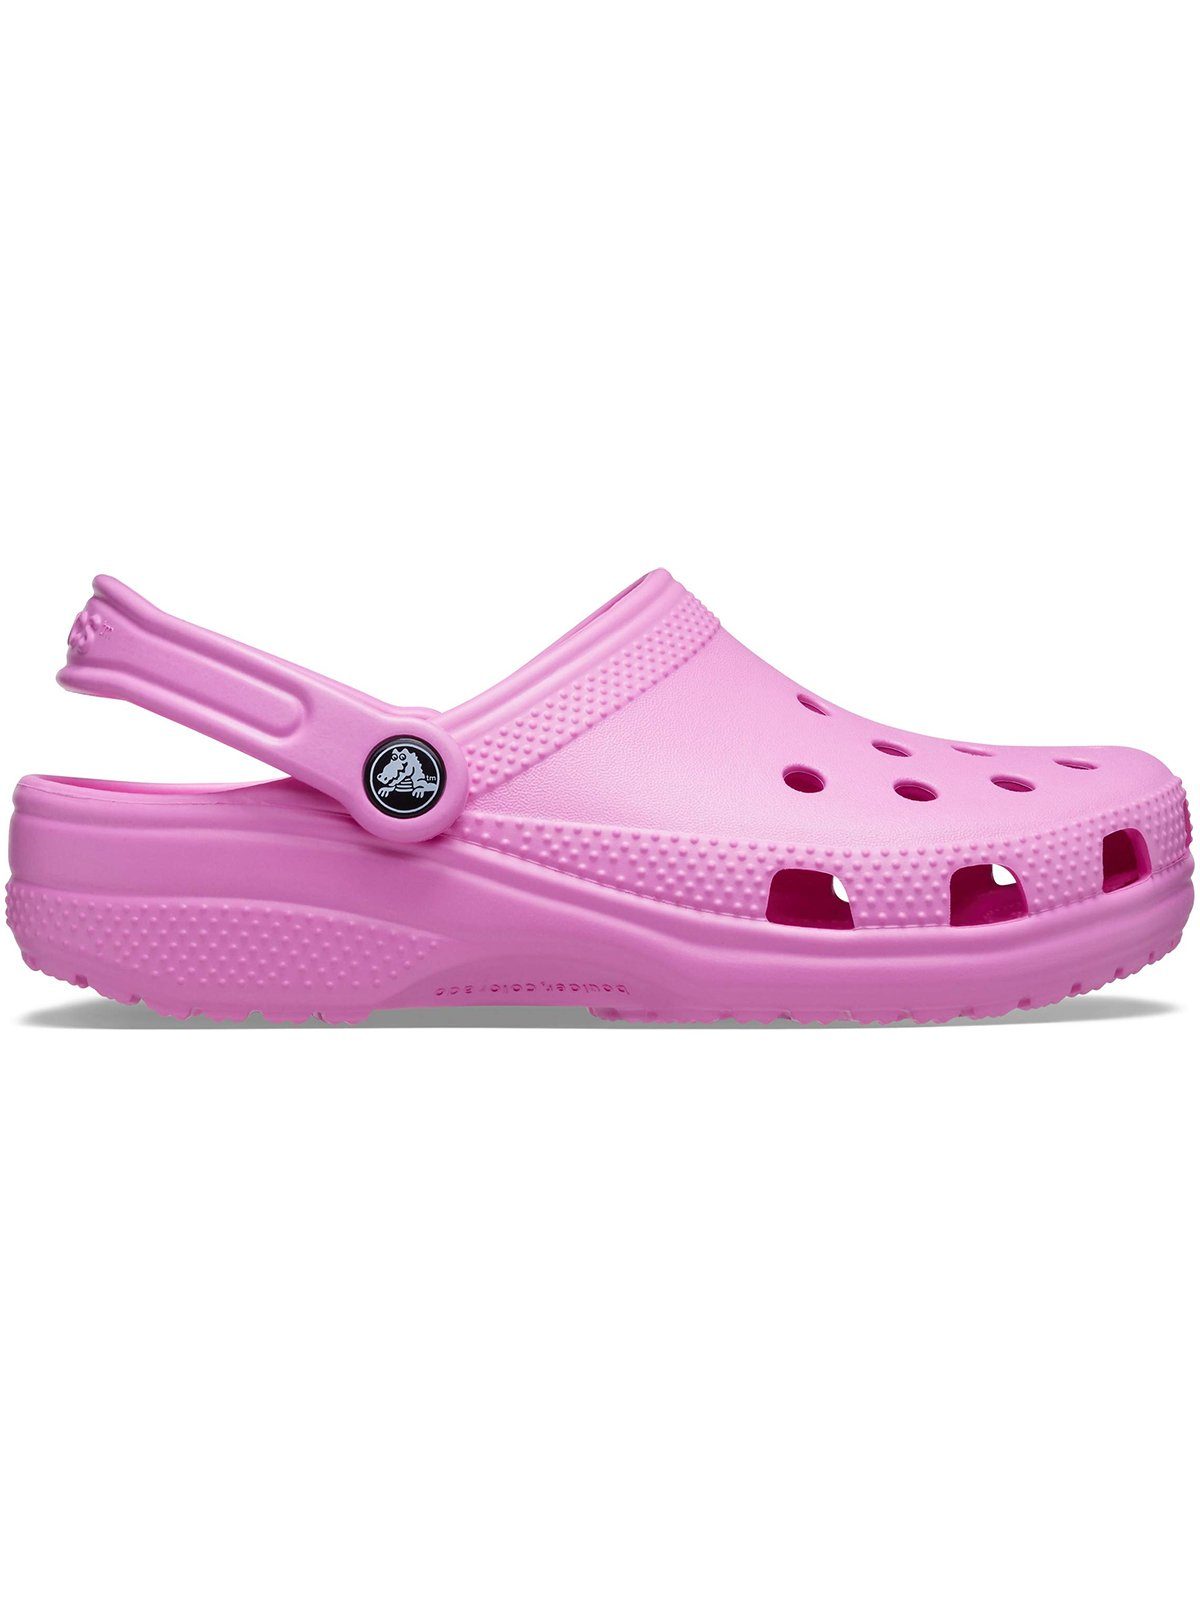 Clog Classic pink taffy Crocs Crocs Clog